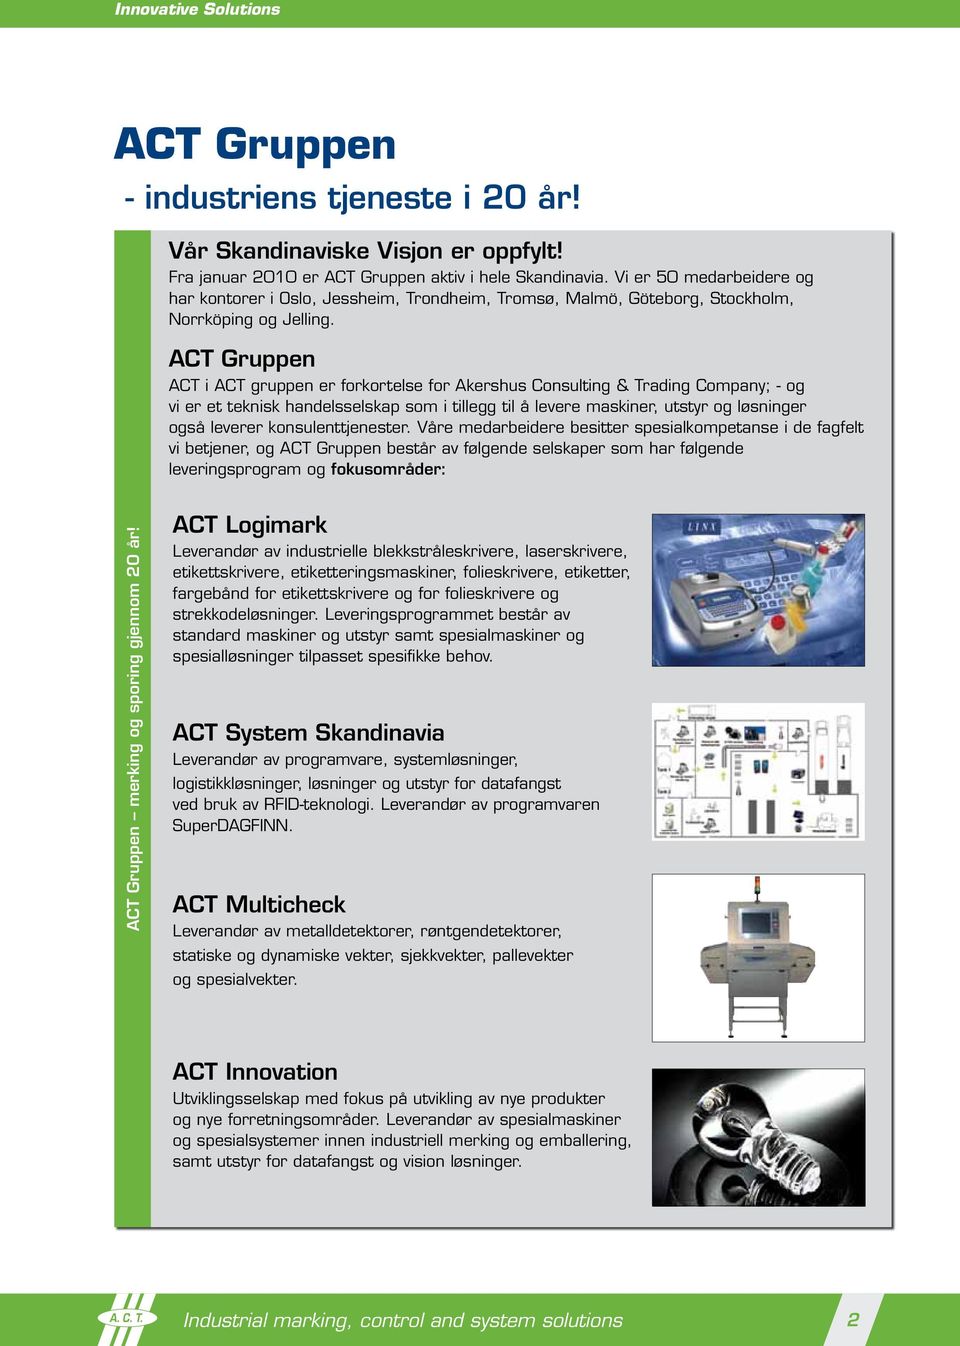 ACT Gruppen ACT i ACT gruppen er forkortelse for Akershus Consulting & Trading Company; - og vi er et teknisk handelsselskap som i tillegg til å levere maskiner, utstyr og løsninger også leverer